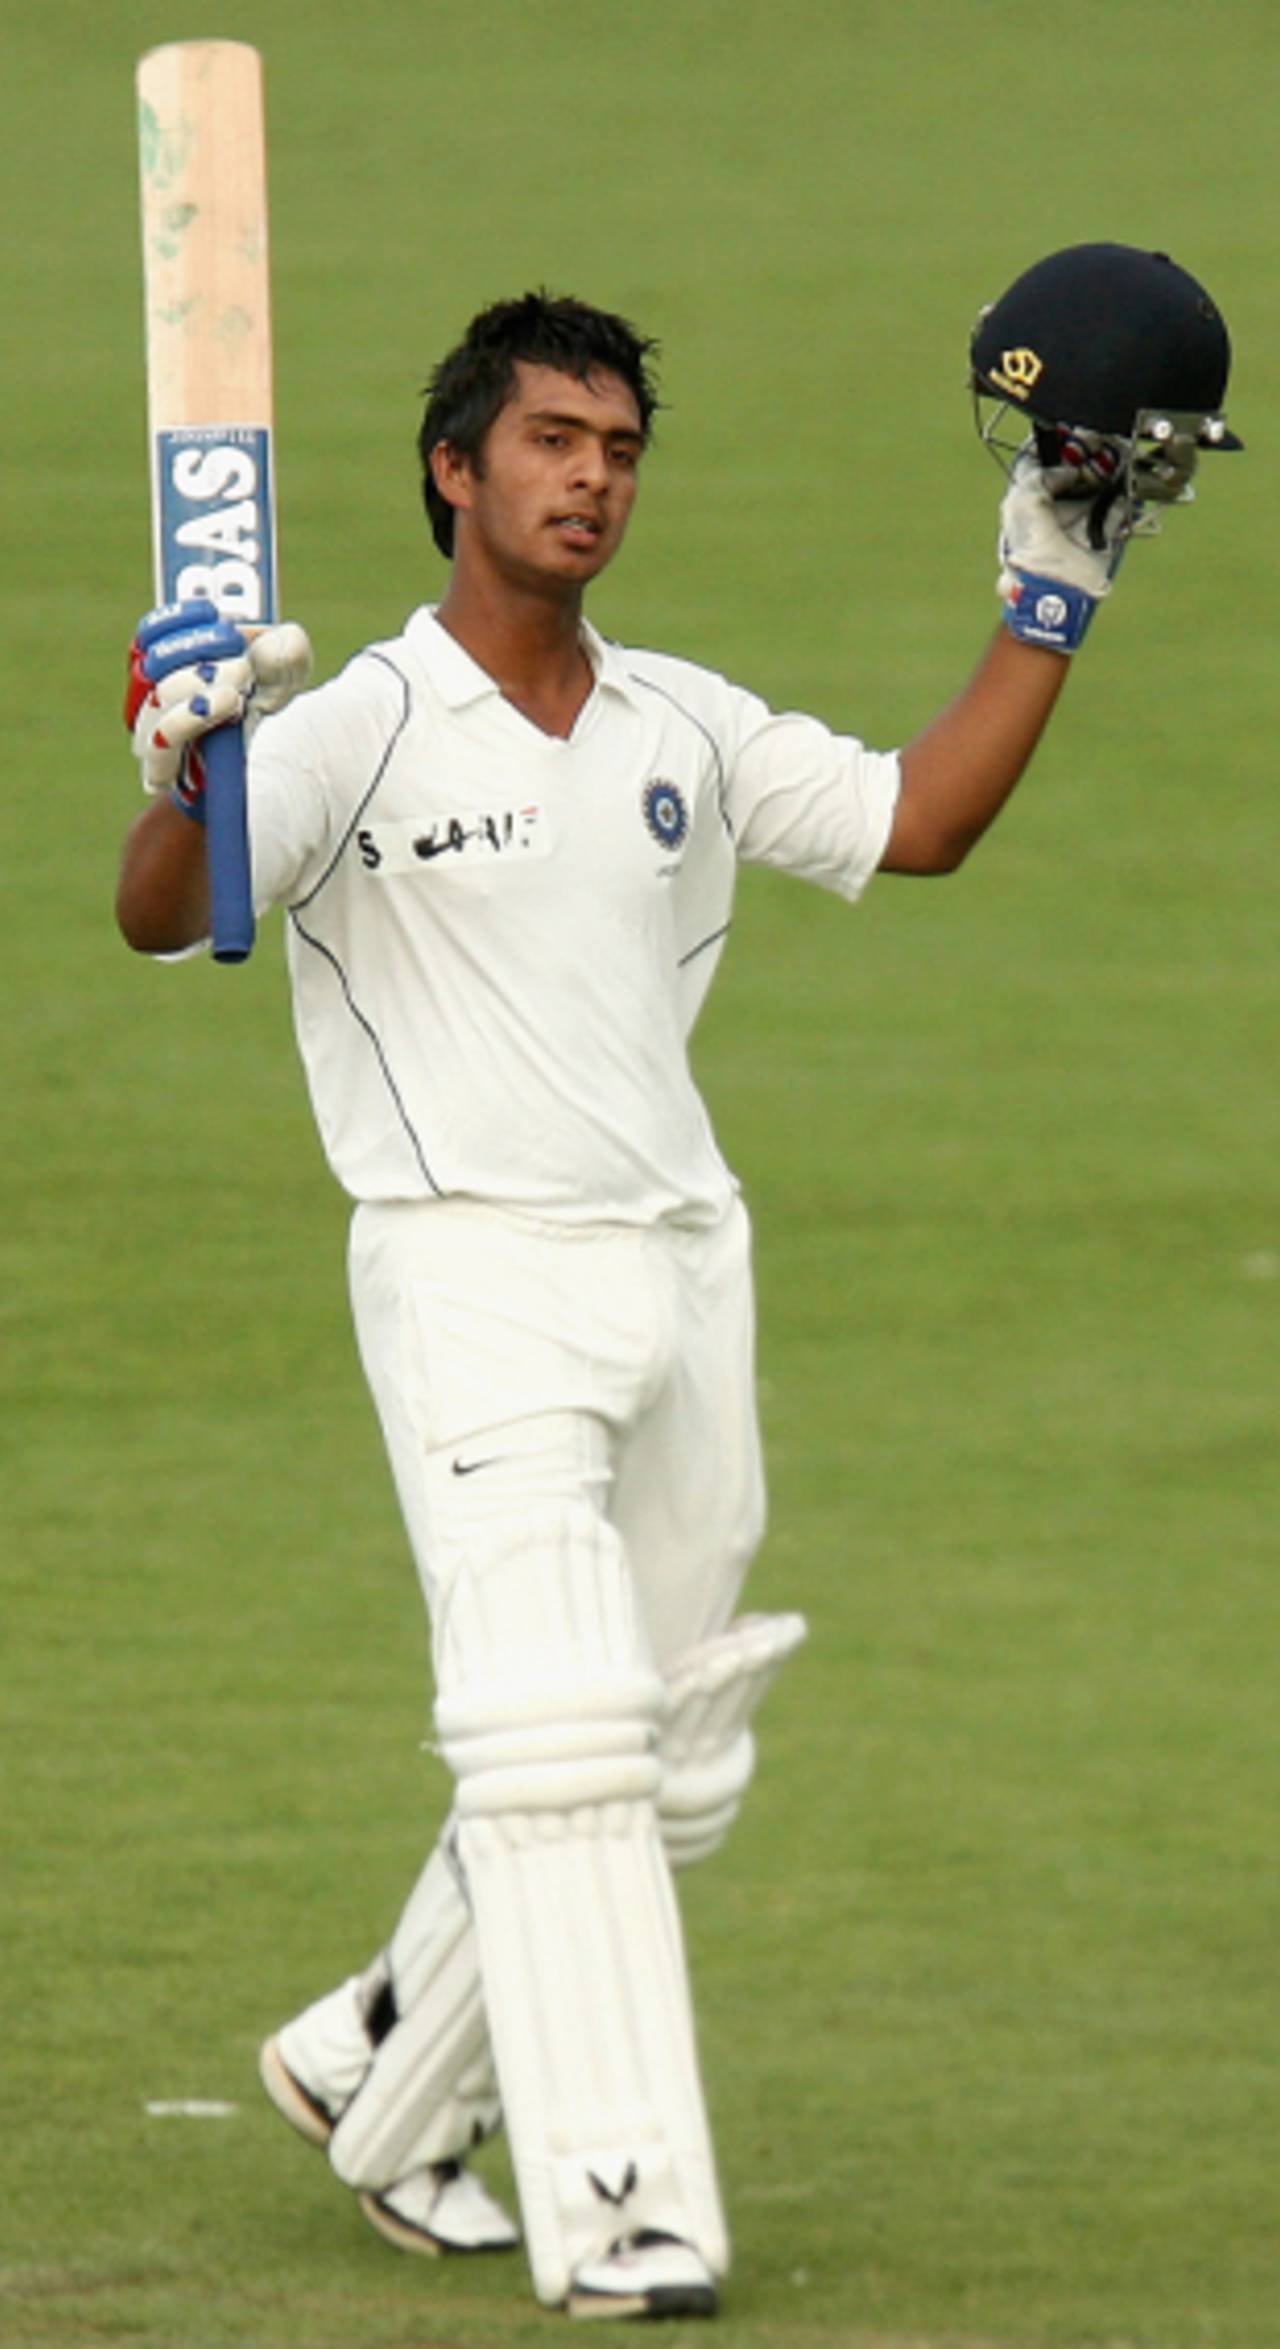 Mandeep Singh brings up his hundred, Australia Under-19 v India Under-19, 1st Test, Hobart, 2nd day, April 12, 2009